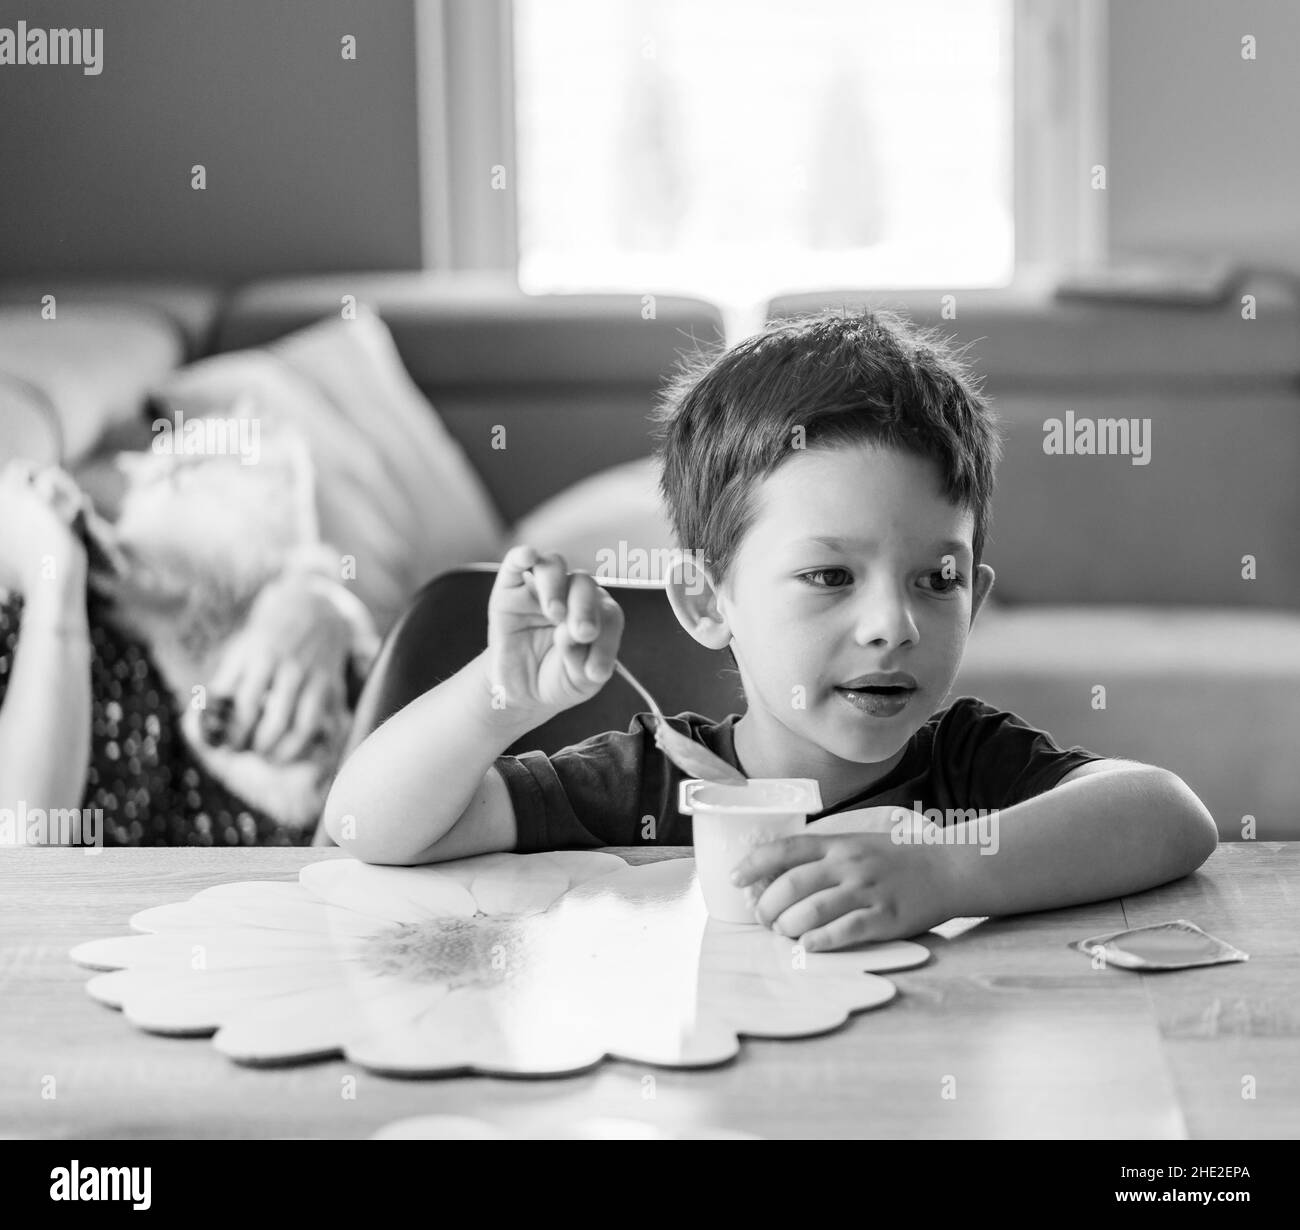 Nahaufnahme eines Jungen, der einen Joghurt isst, während seine Mutter auf dem Sofa auf einem Hintergrund sitzt Stockfoto